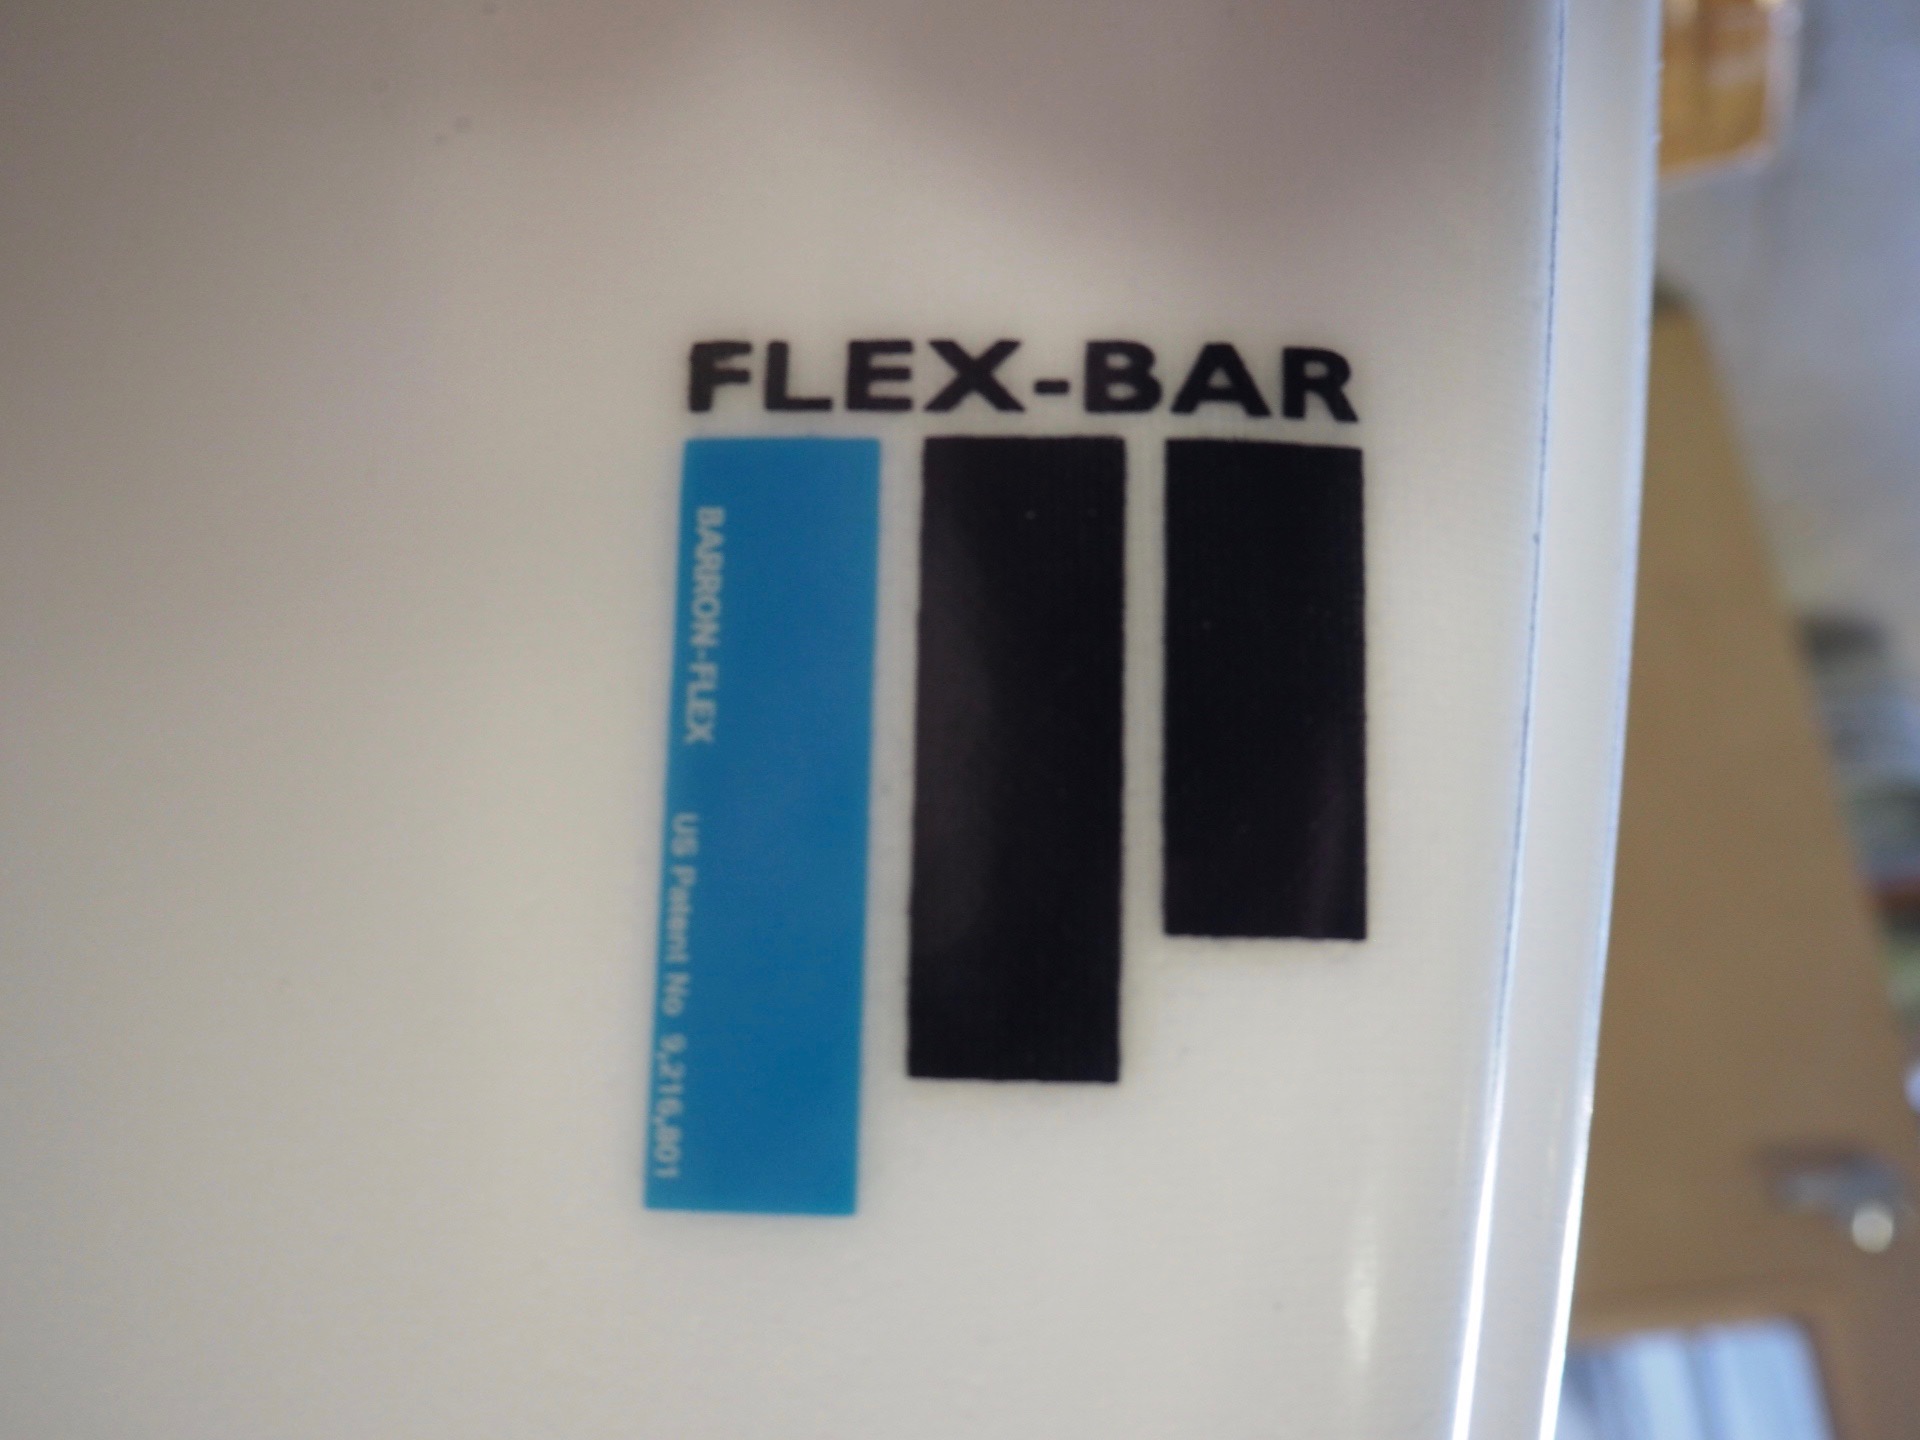 FLEX-BAR